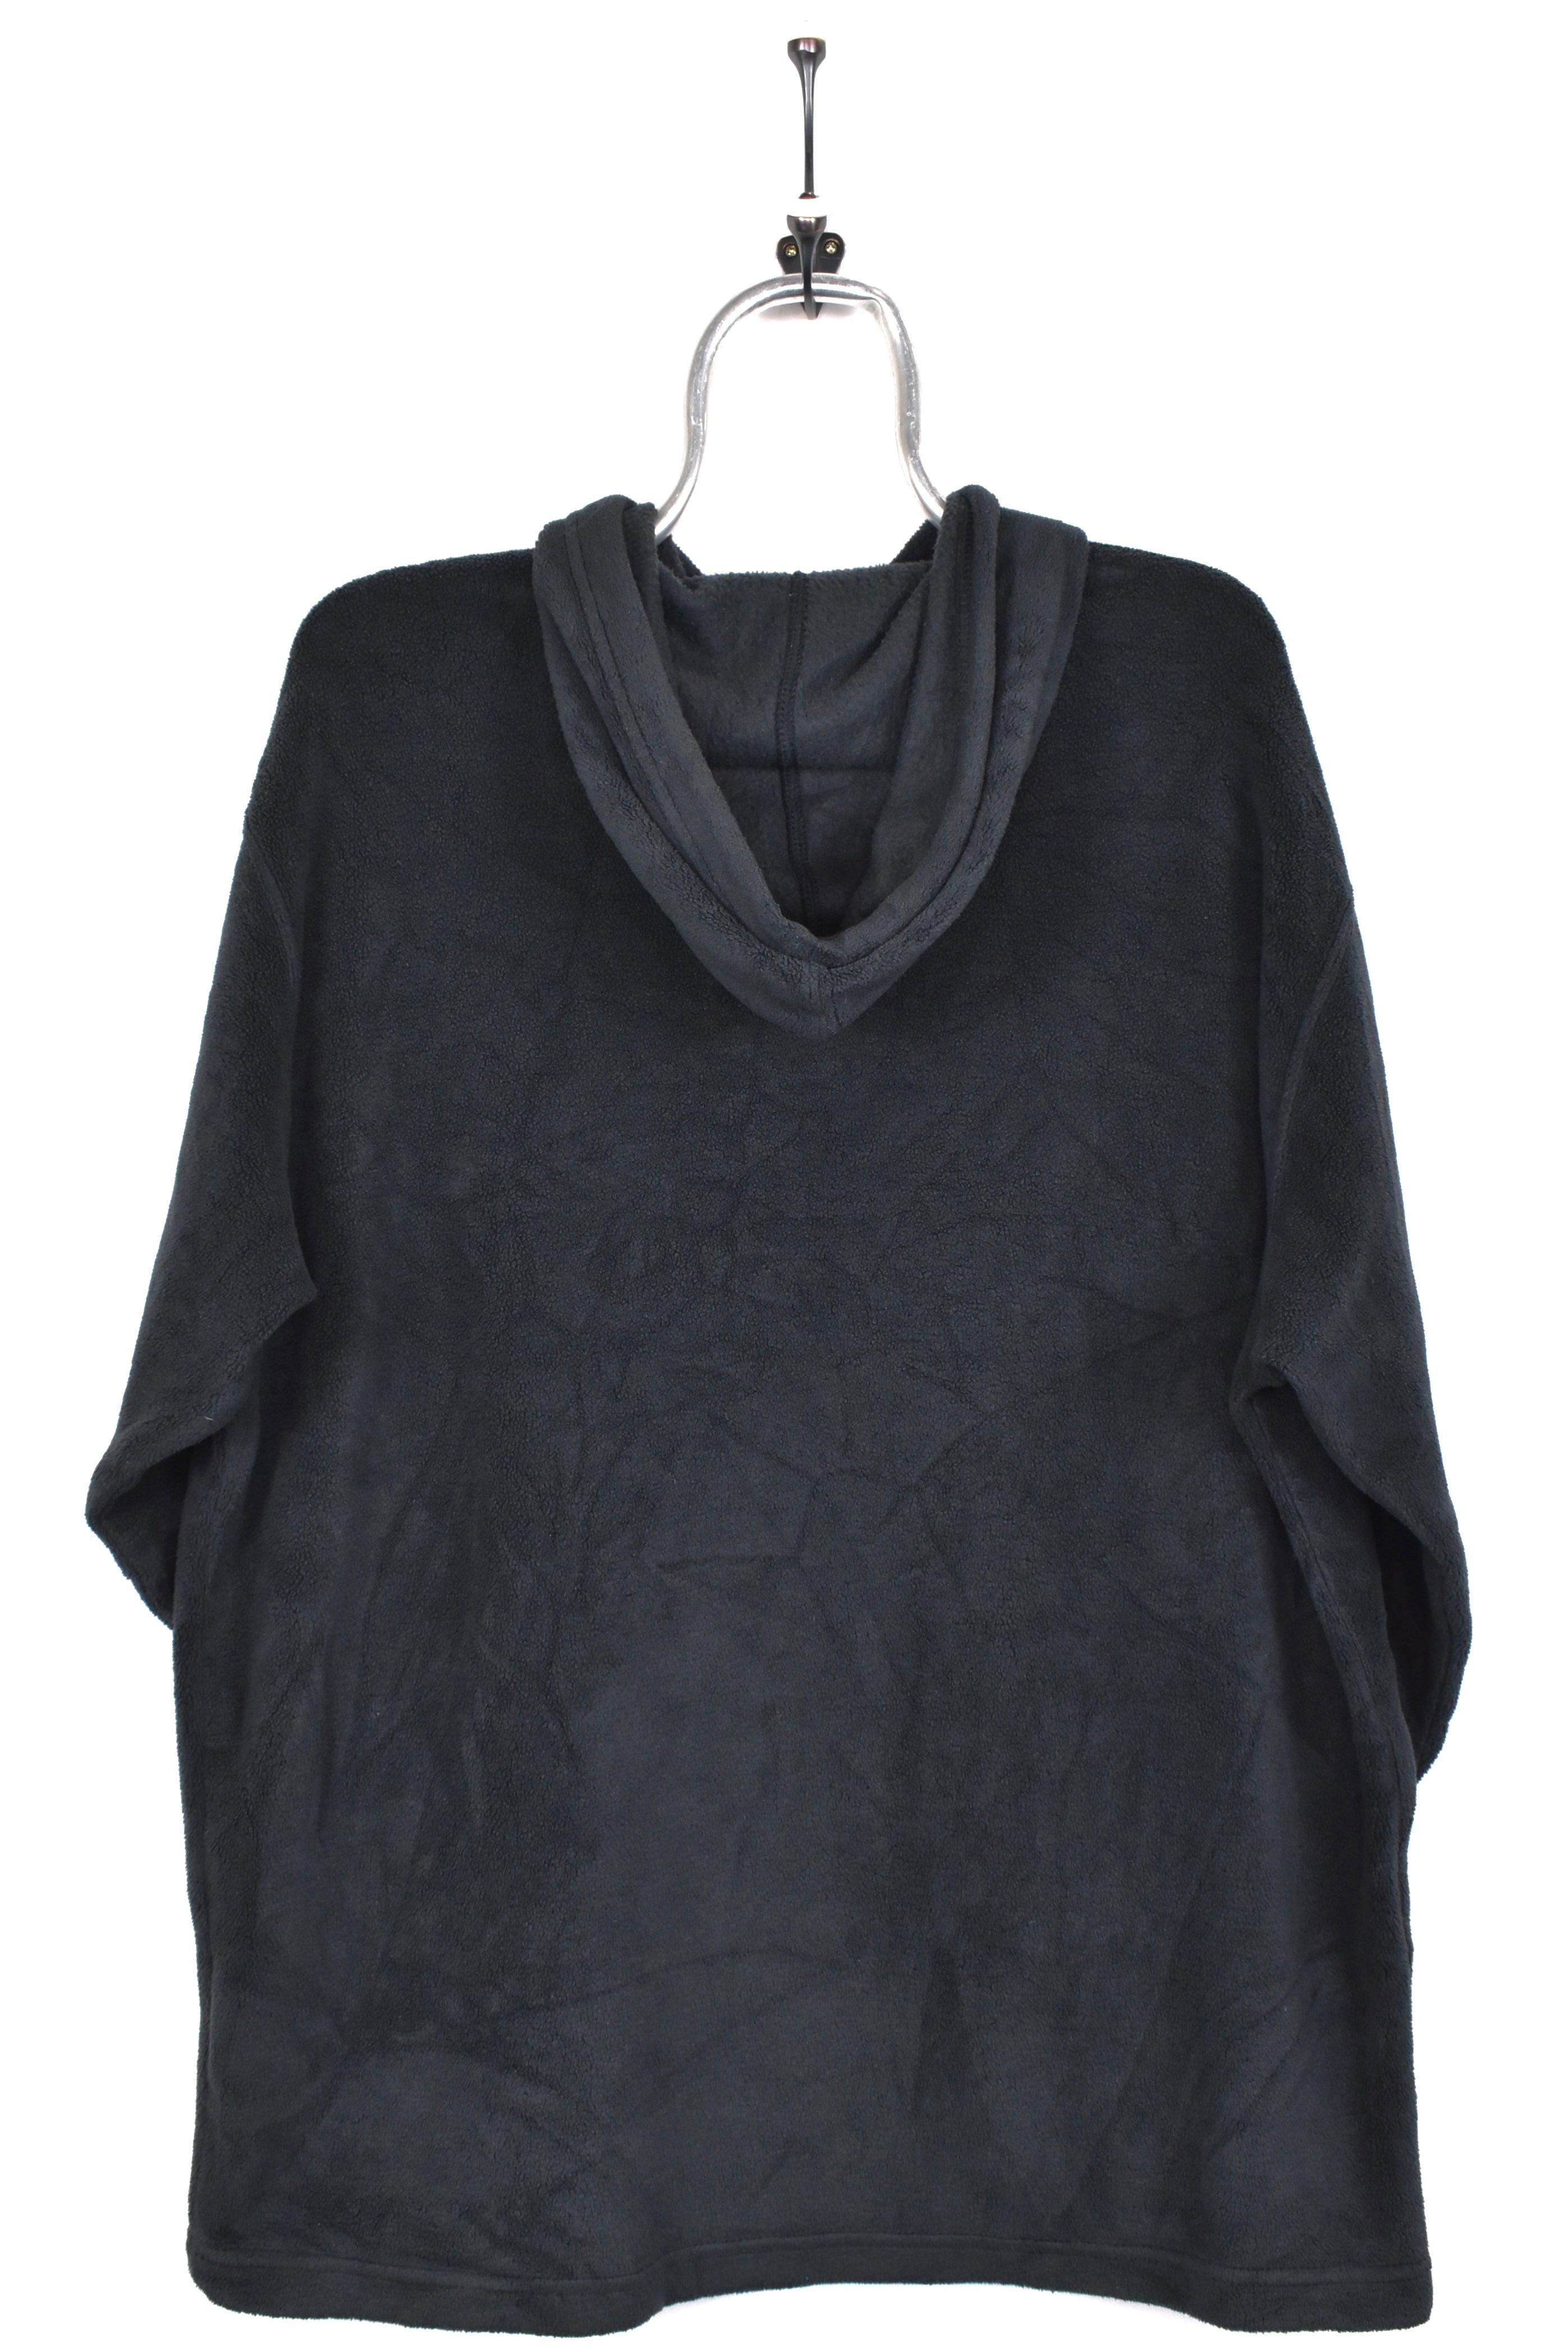 Vintage Nike hoodie, black embroidered fleece sweatshirt - AU Large NIKE